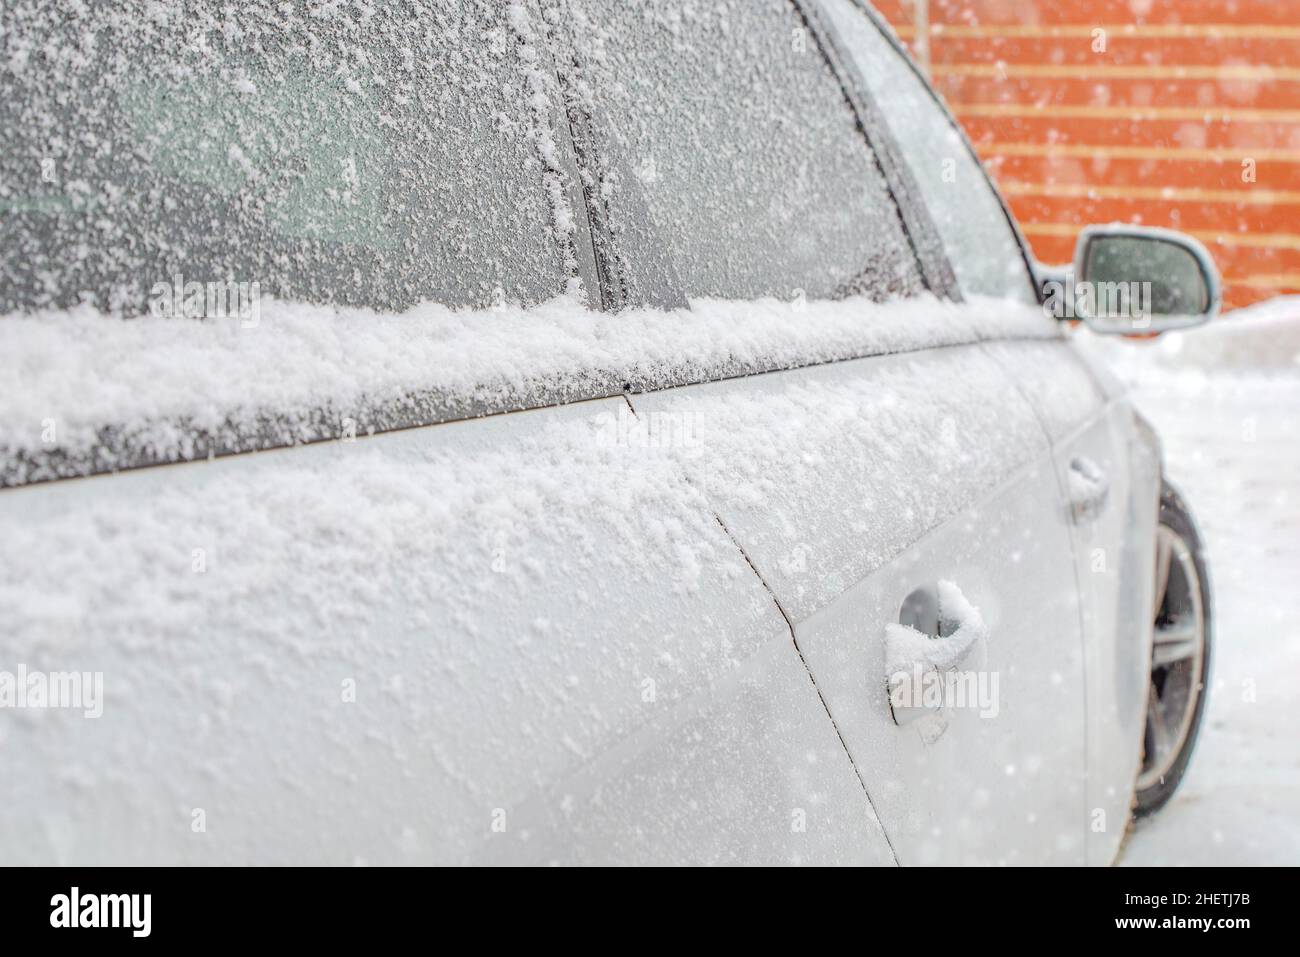 Gefrorener Rückspiegel, verschneites Auto. Winter, Schnee, Schneefall Stockfoto